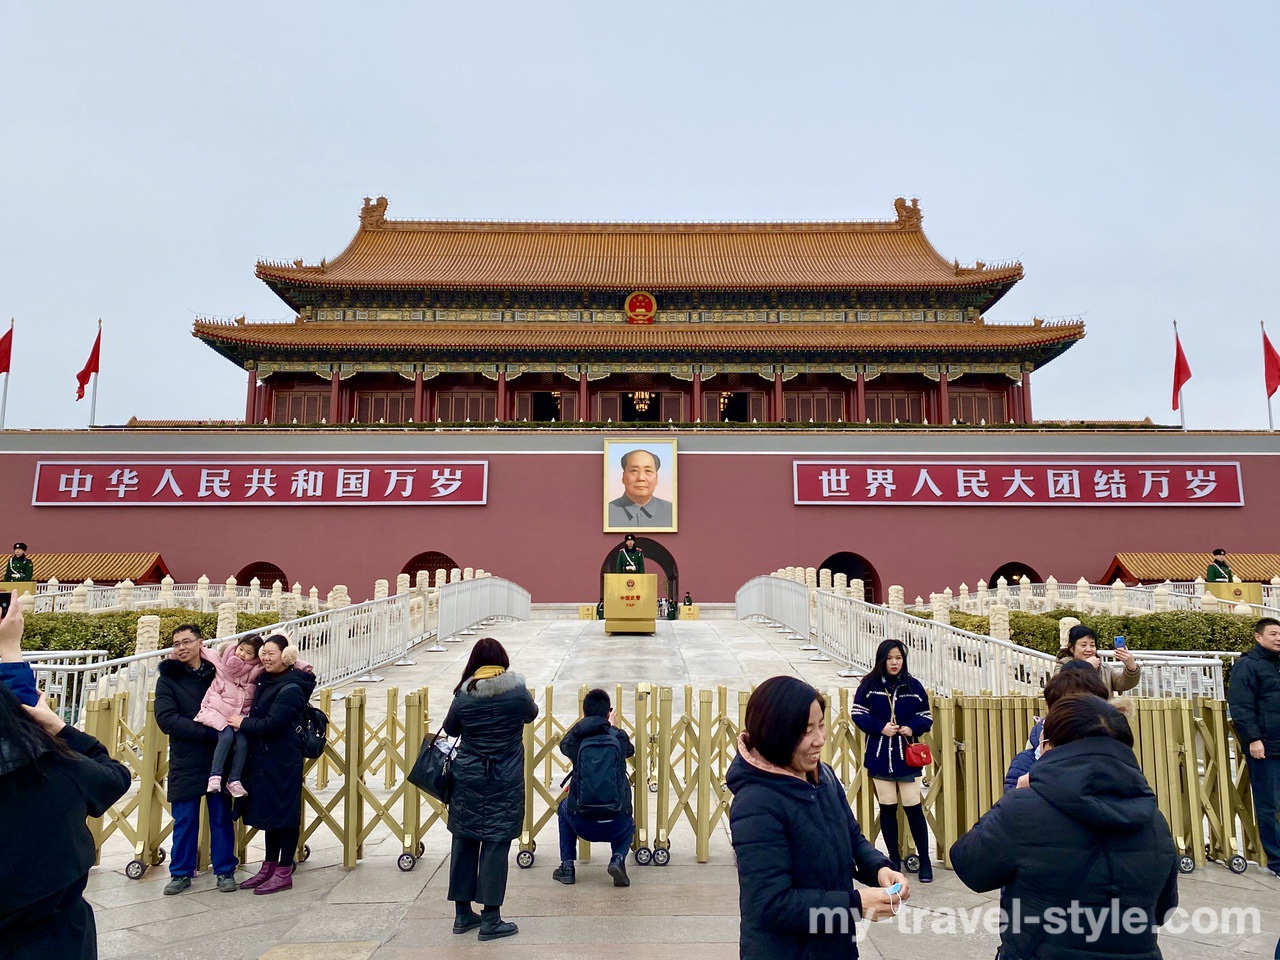 天安門広場と紫禁城 故宮博物院 は中国北京で行くべき観光スポット 代の個人旅行